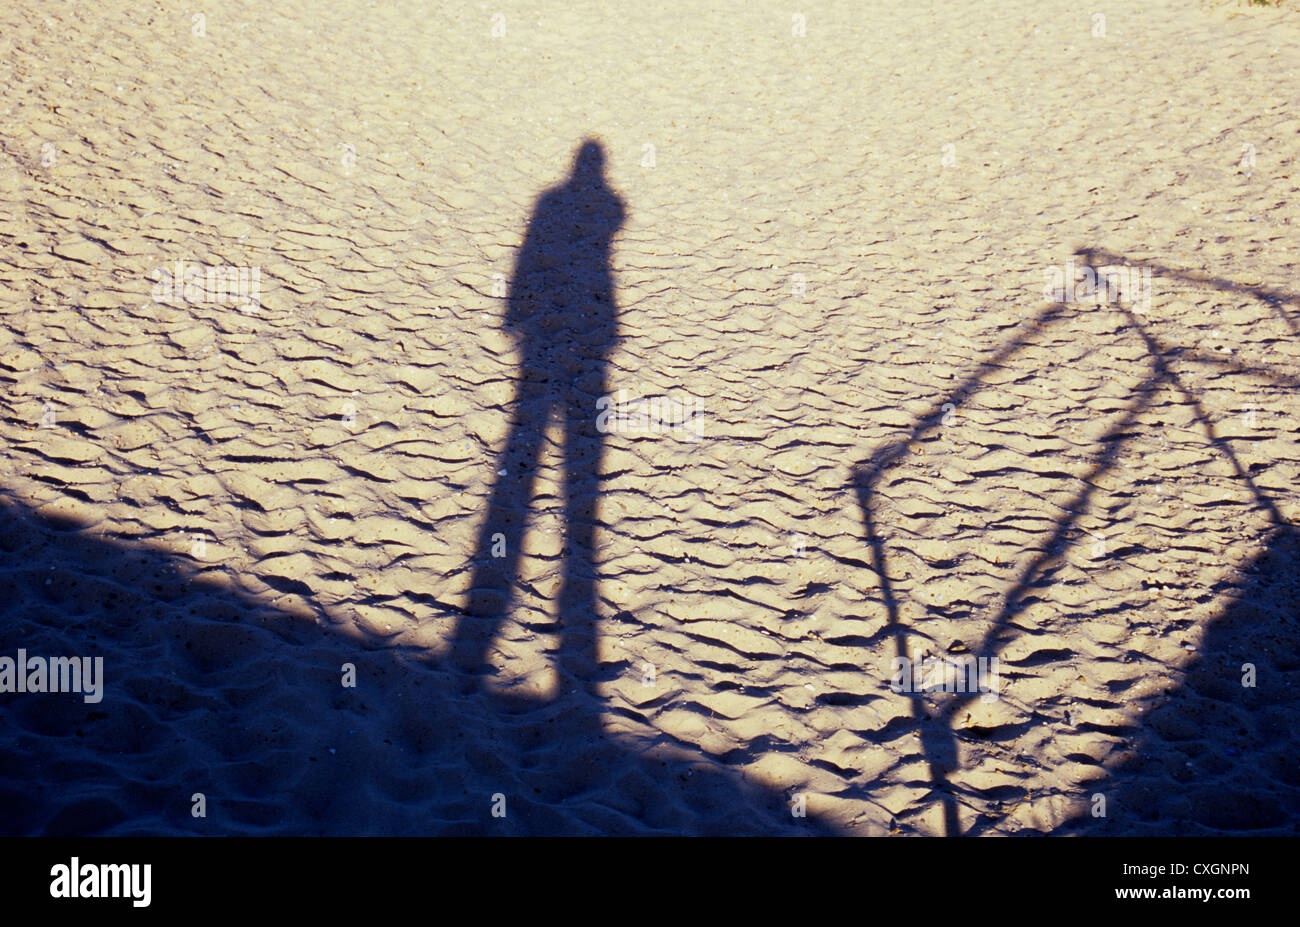 Schatten Sie auf sauber leicht trockenen Sand pockennarbige mit Fuß Vertiefungen der Figur stehen in der Nähe von Geländer Stockfoto